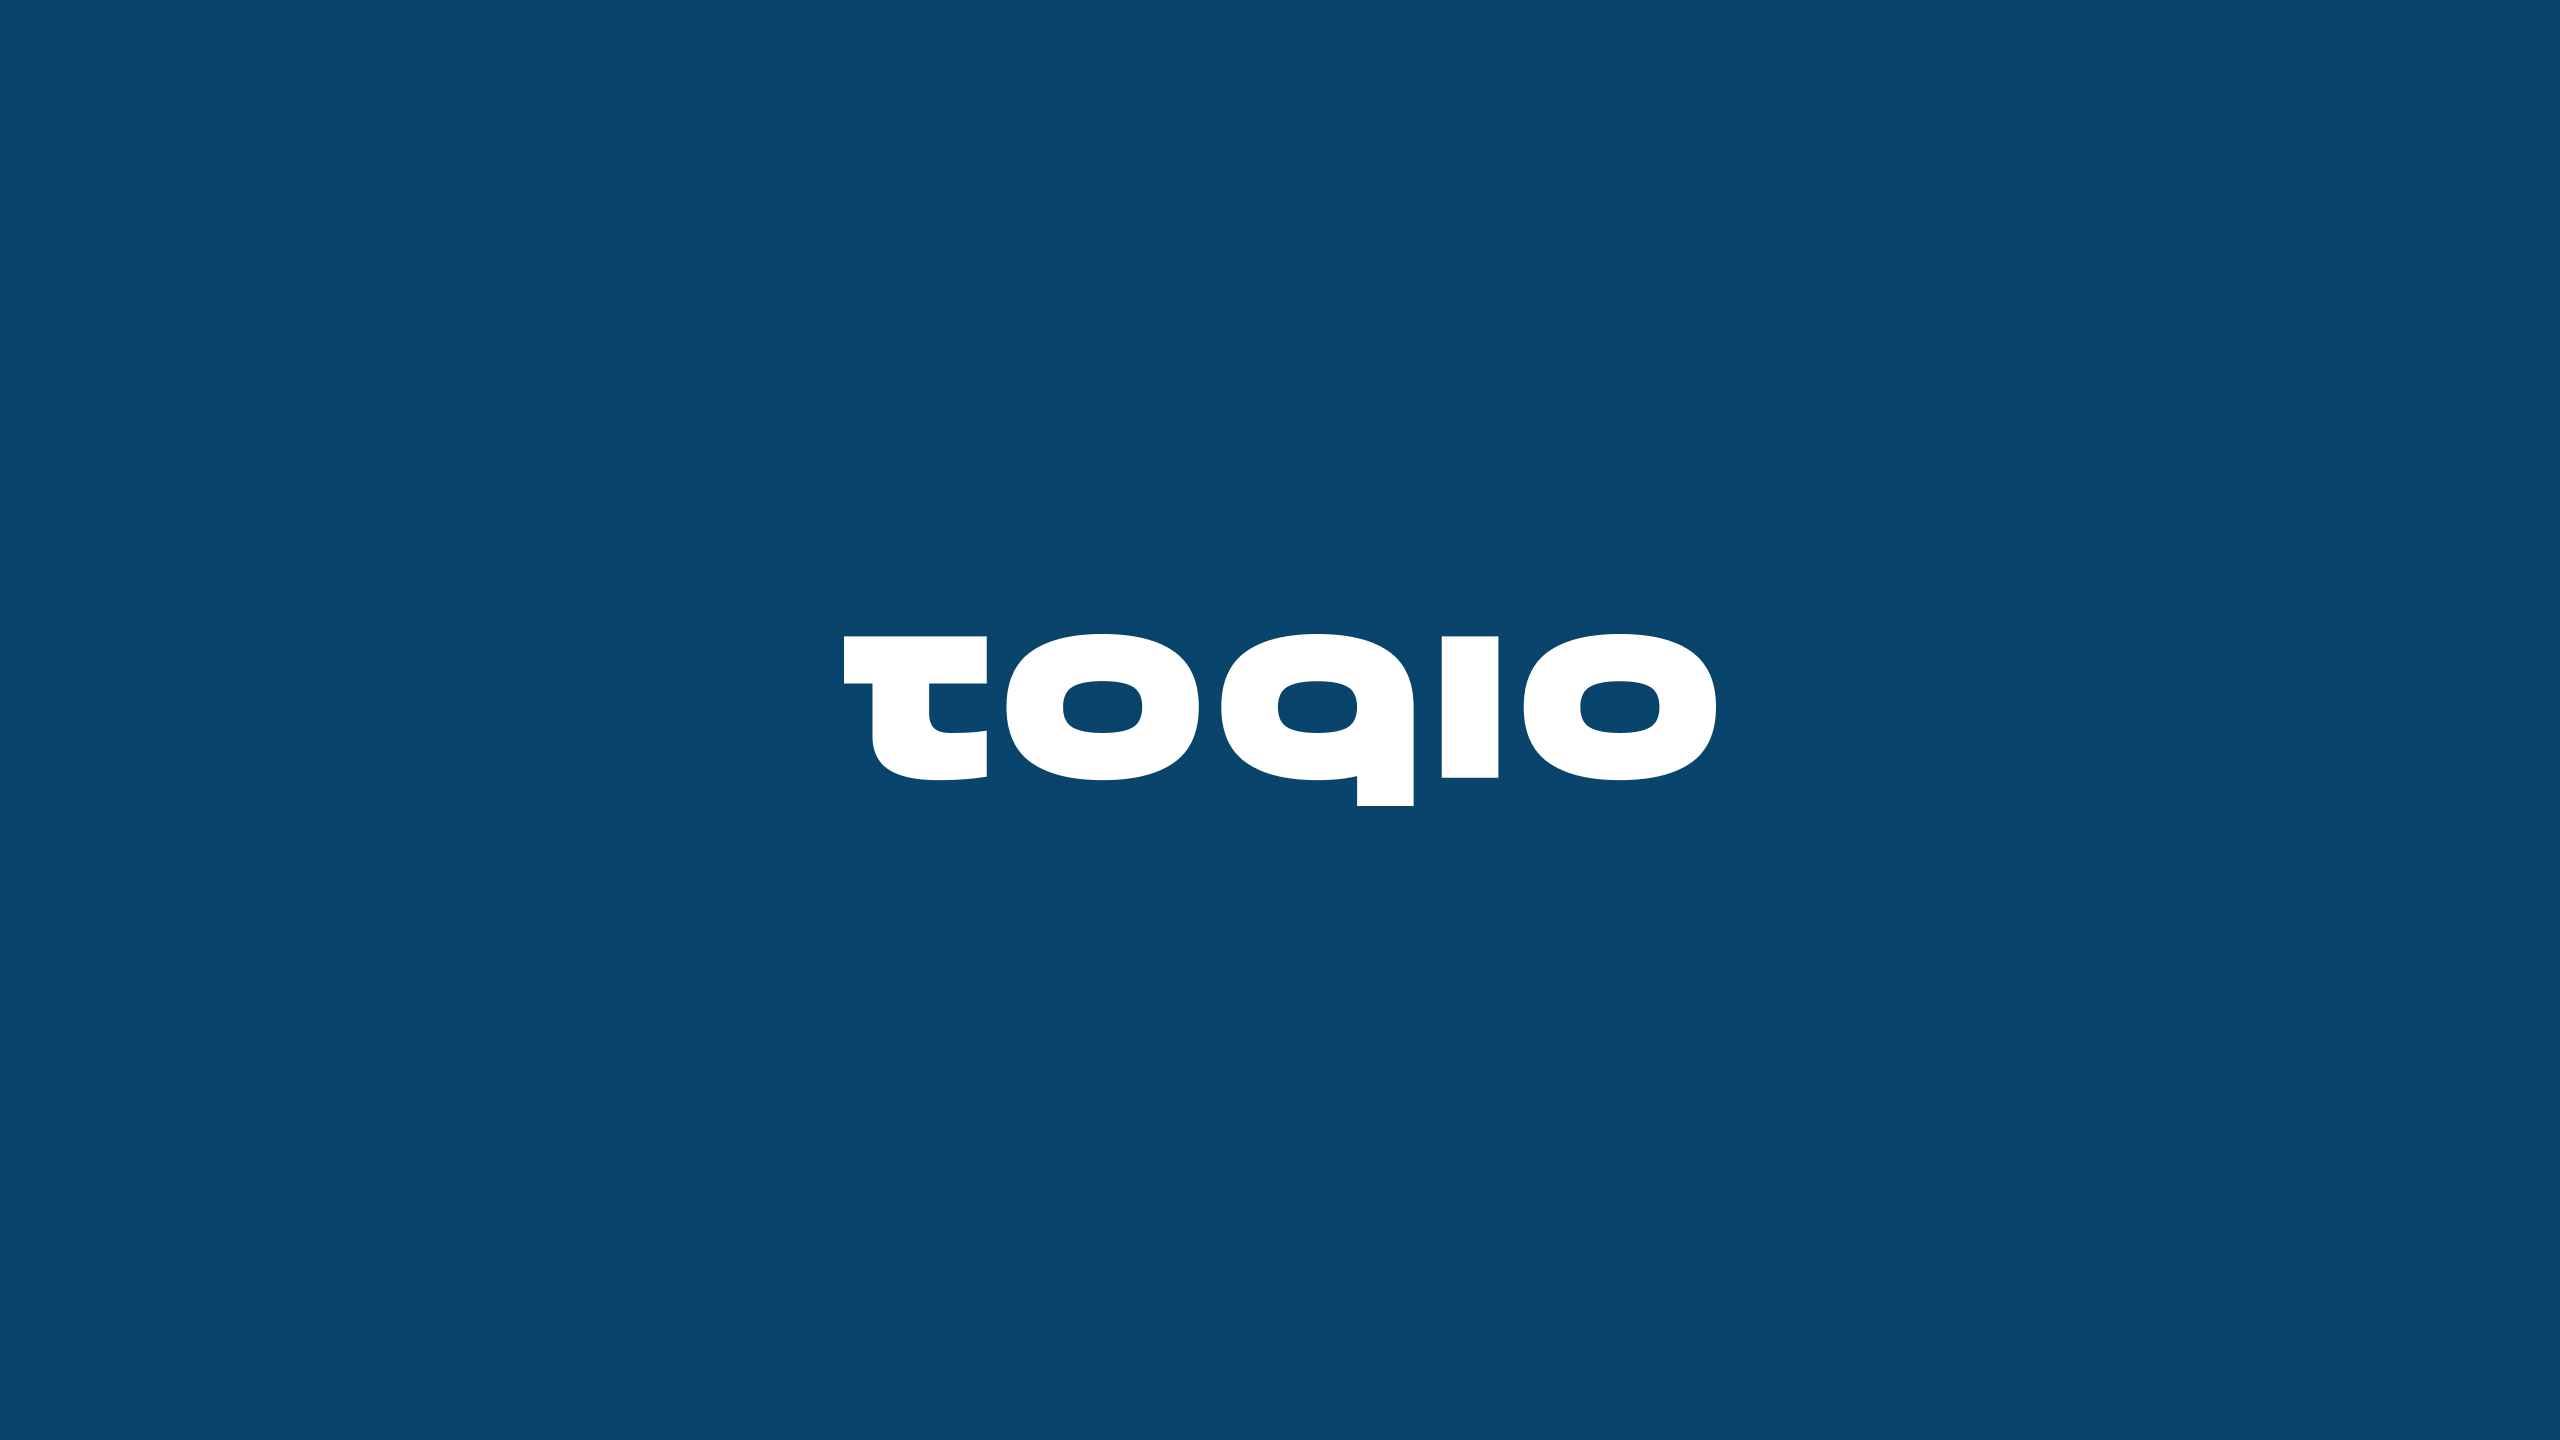 Logotipo Toqio